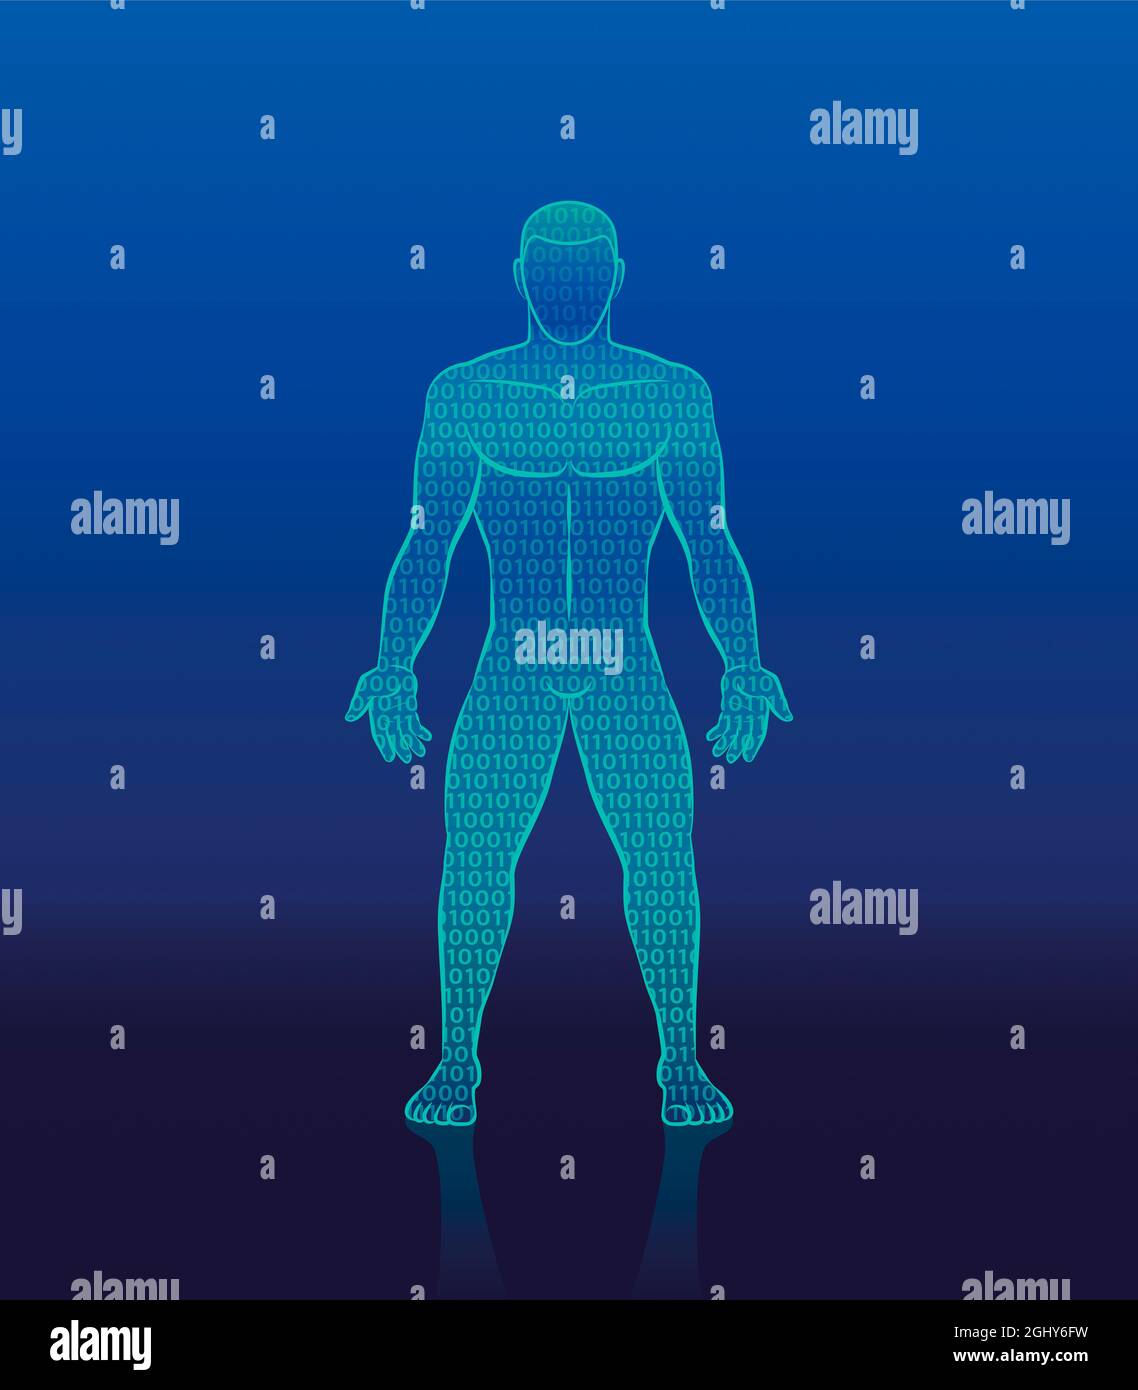 Codice binario cyber man - silhouette umana digitale composta da uno e zero - simbolo per l'intelligenza artificiale, la cibernetica, la robotica bionica. Foto Stock